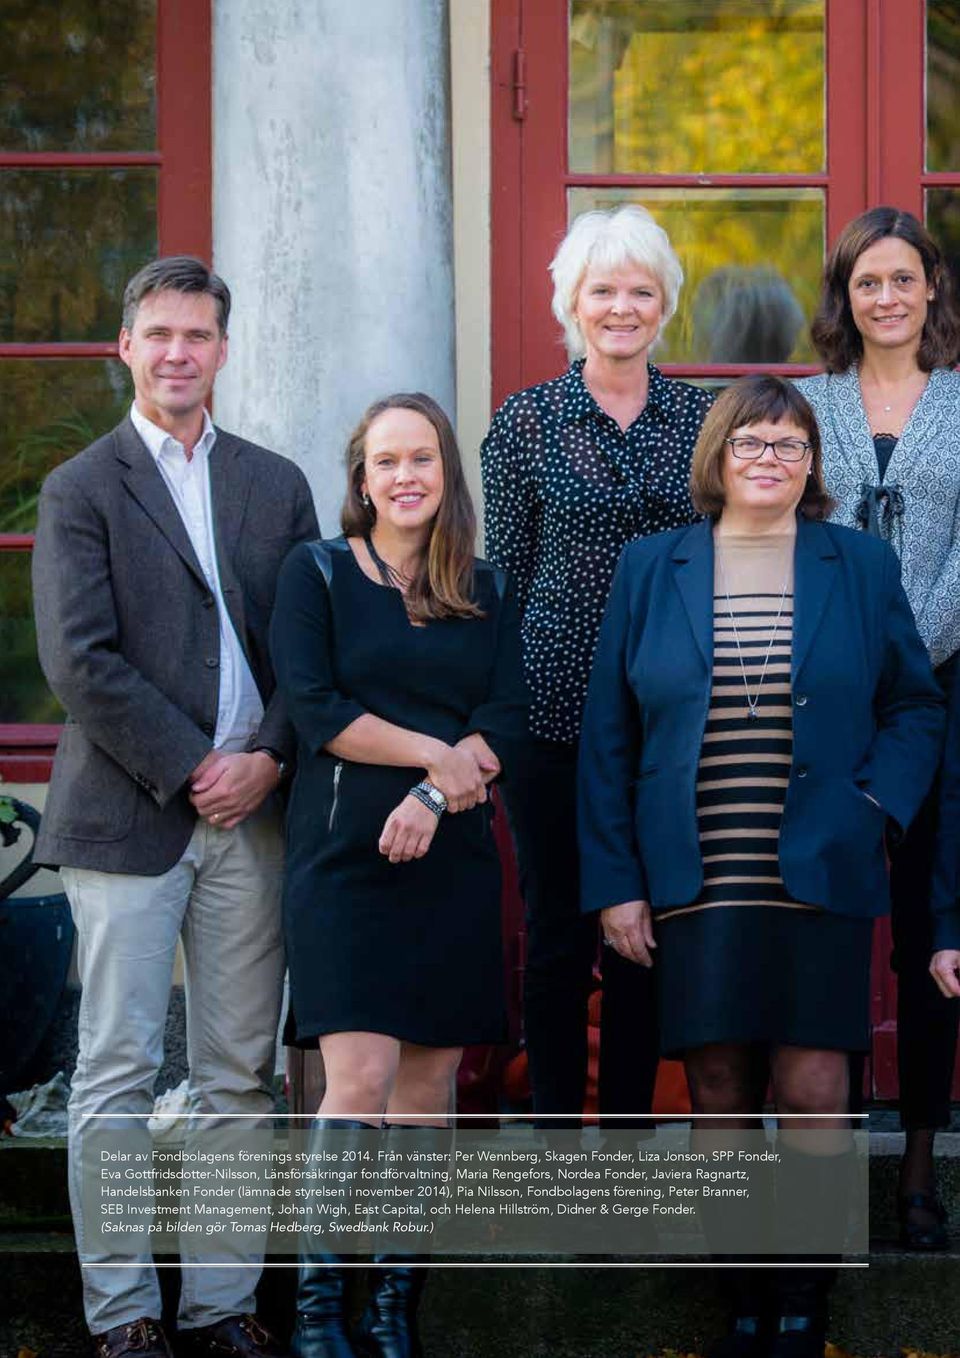 Maria Rengefors, Nordea Fonder, Javiera Ragnartz, Handelsbanken Fonder (lämnade styrelsen i november 2014), Pia Nilsson,